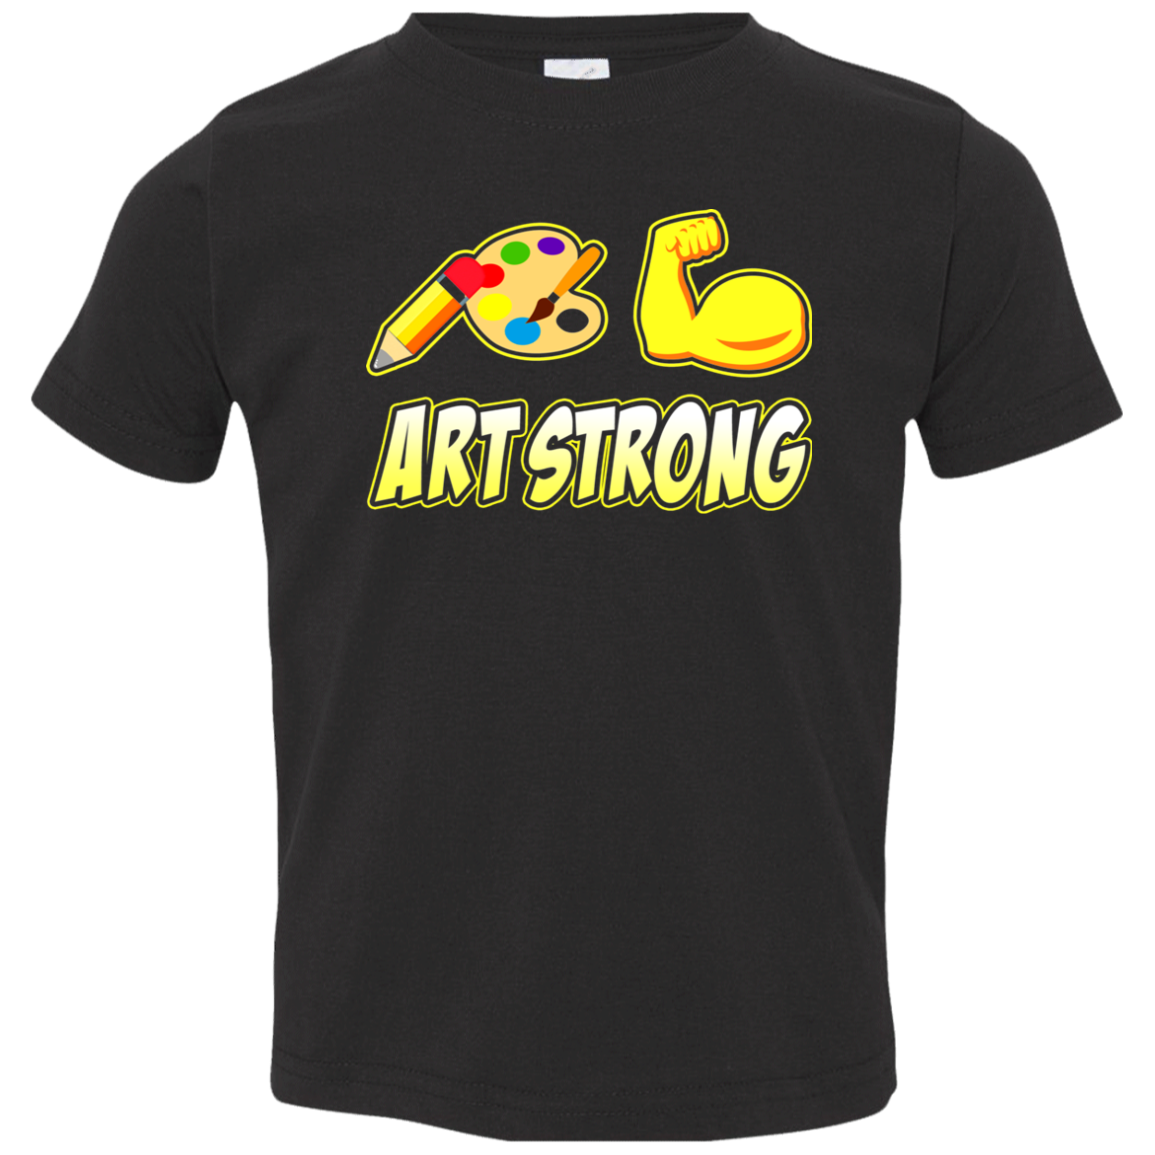 ArtichokeUSA Custom Design. Art Strong. Toddler Jersey T-Shirt